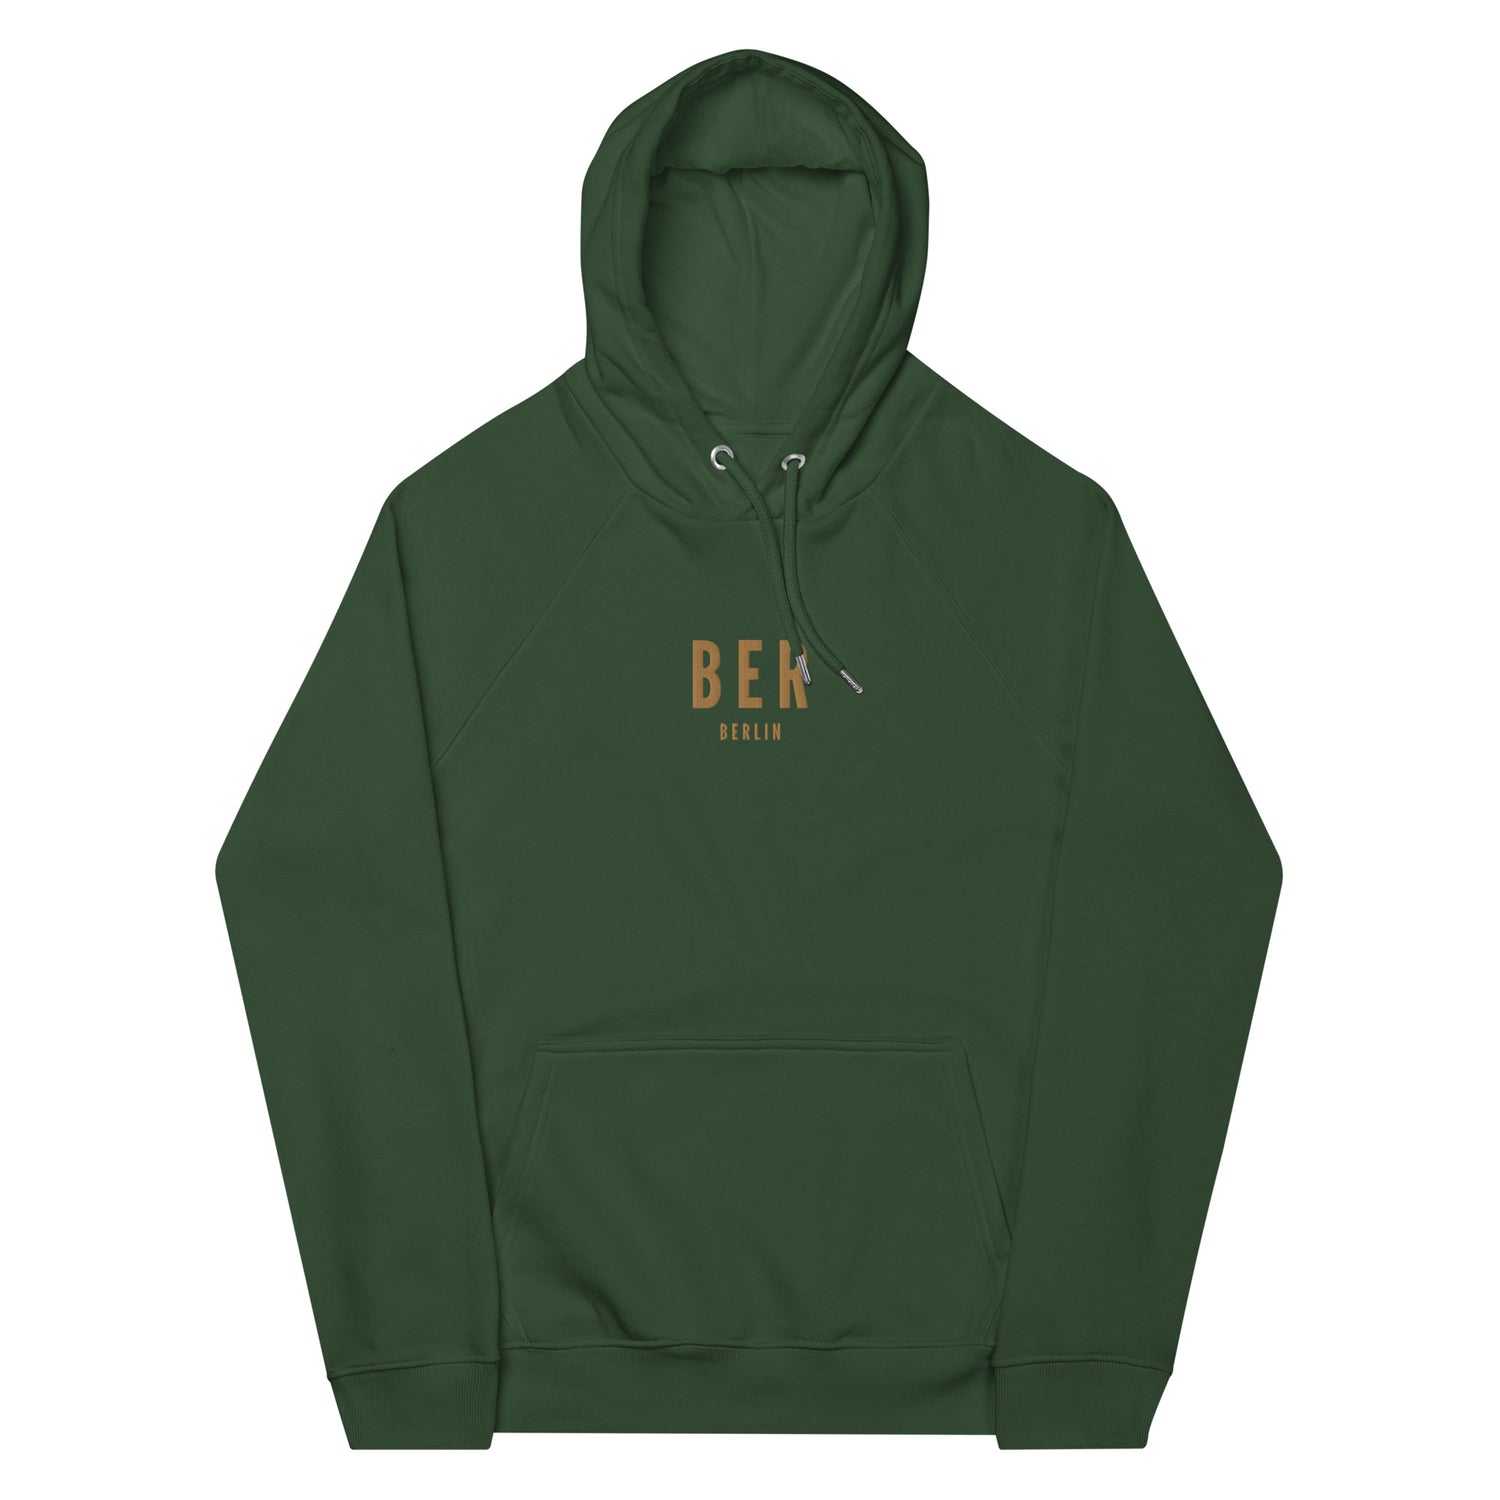 Berlin Germany Hoodies and Sweatshirts • BER Airport Code